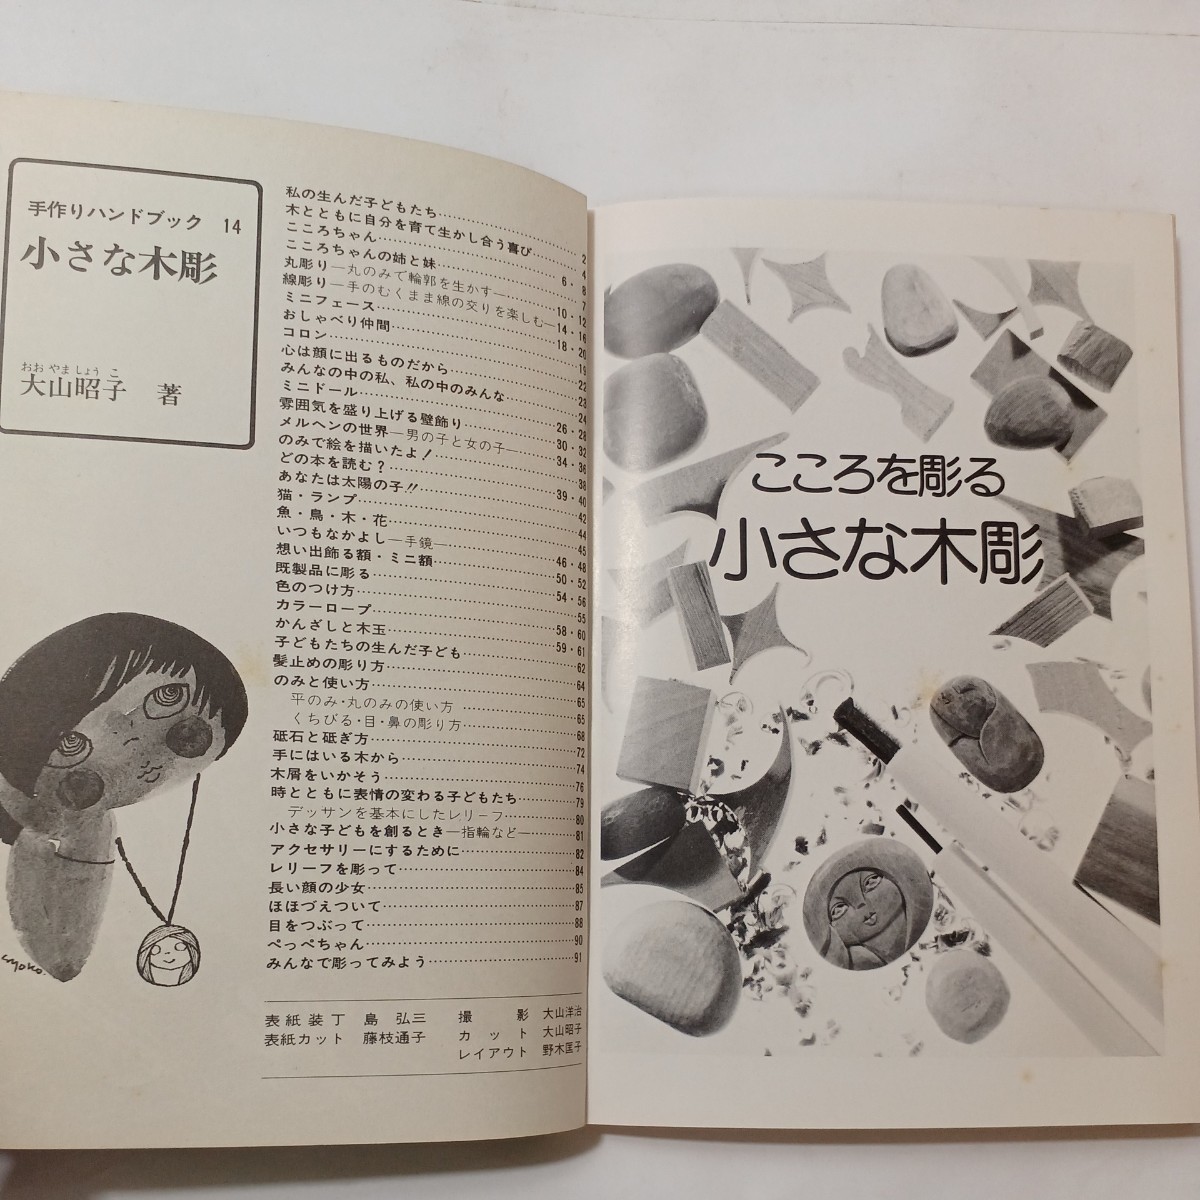 zaa-493♪小さな木彫 (手作りハンドブック (14)) 大山 昭子 (著) ひかりのくに (1977/03)